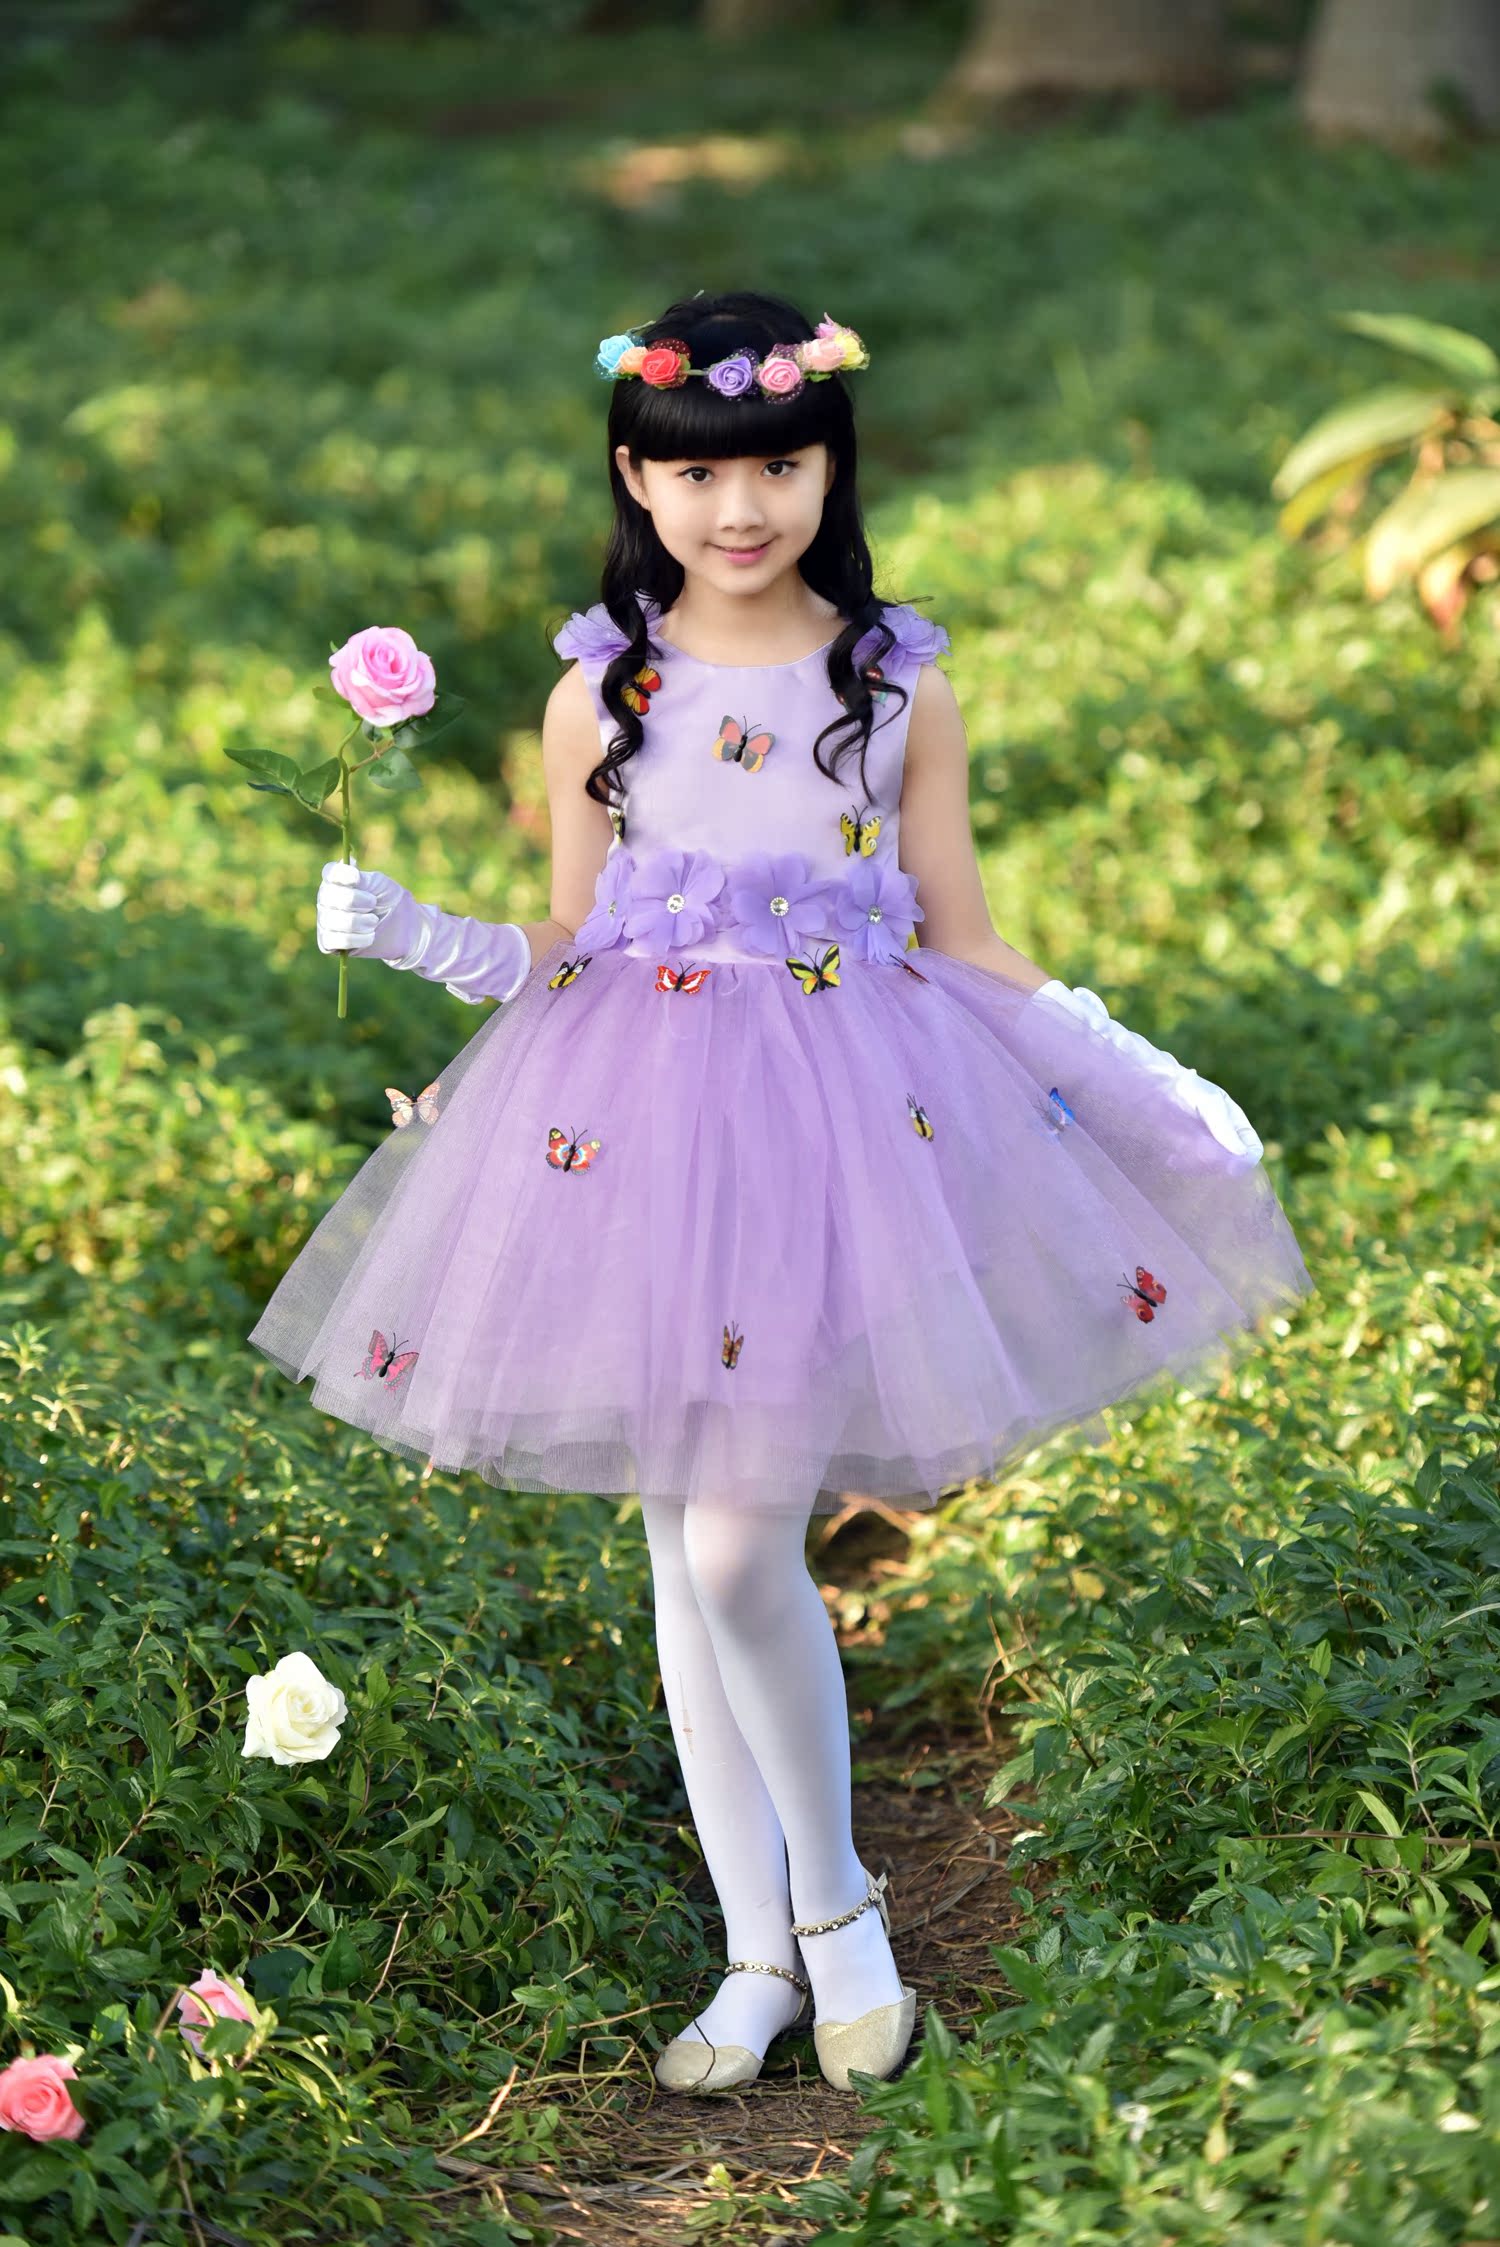 新款儿童演出服女童公主裙韩版连衣裙幼儿舞蹈蓬蓬裙合唱服小孩裙